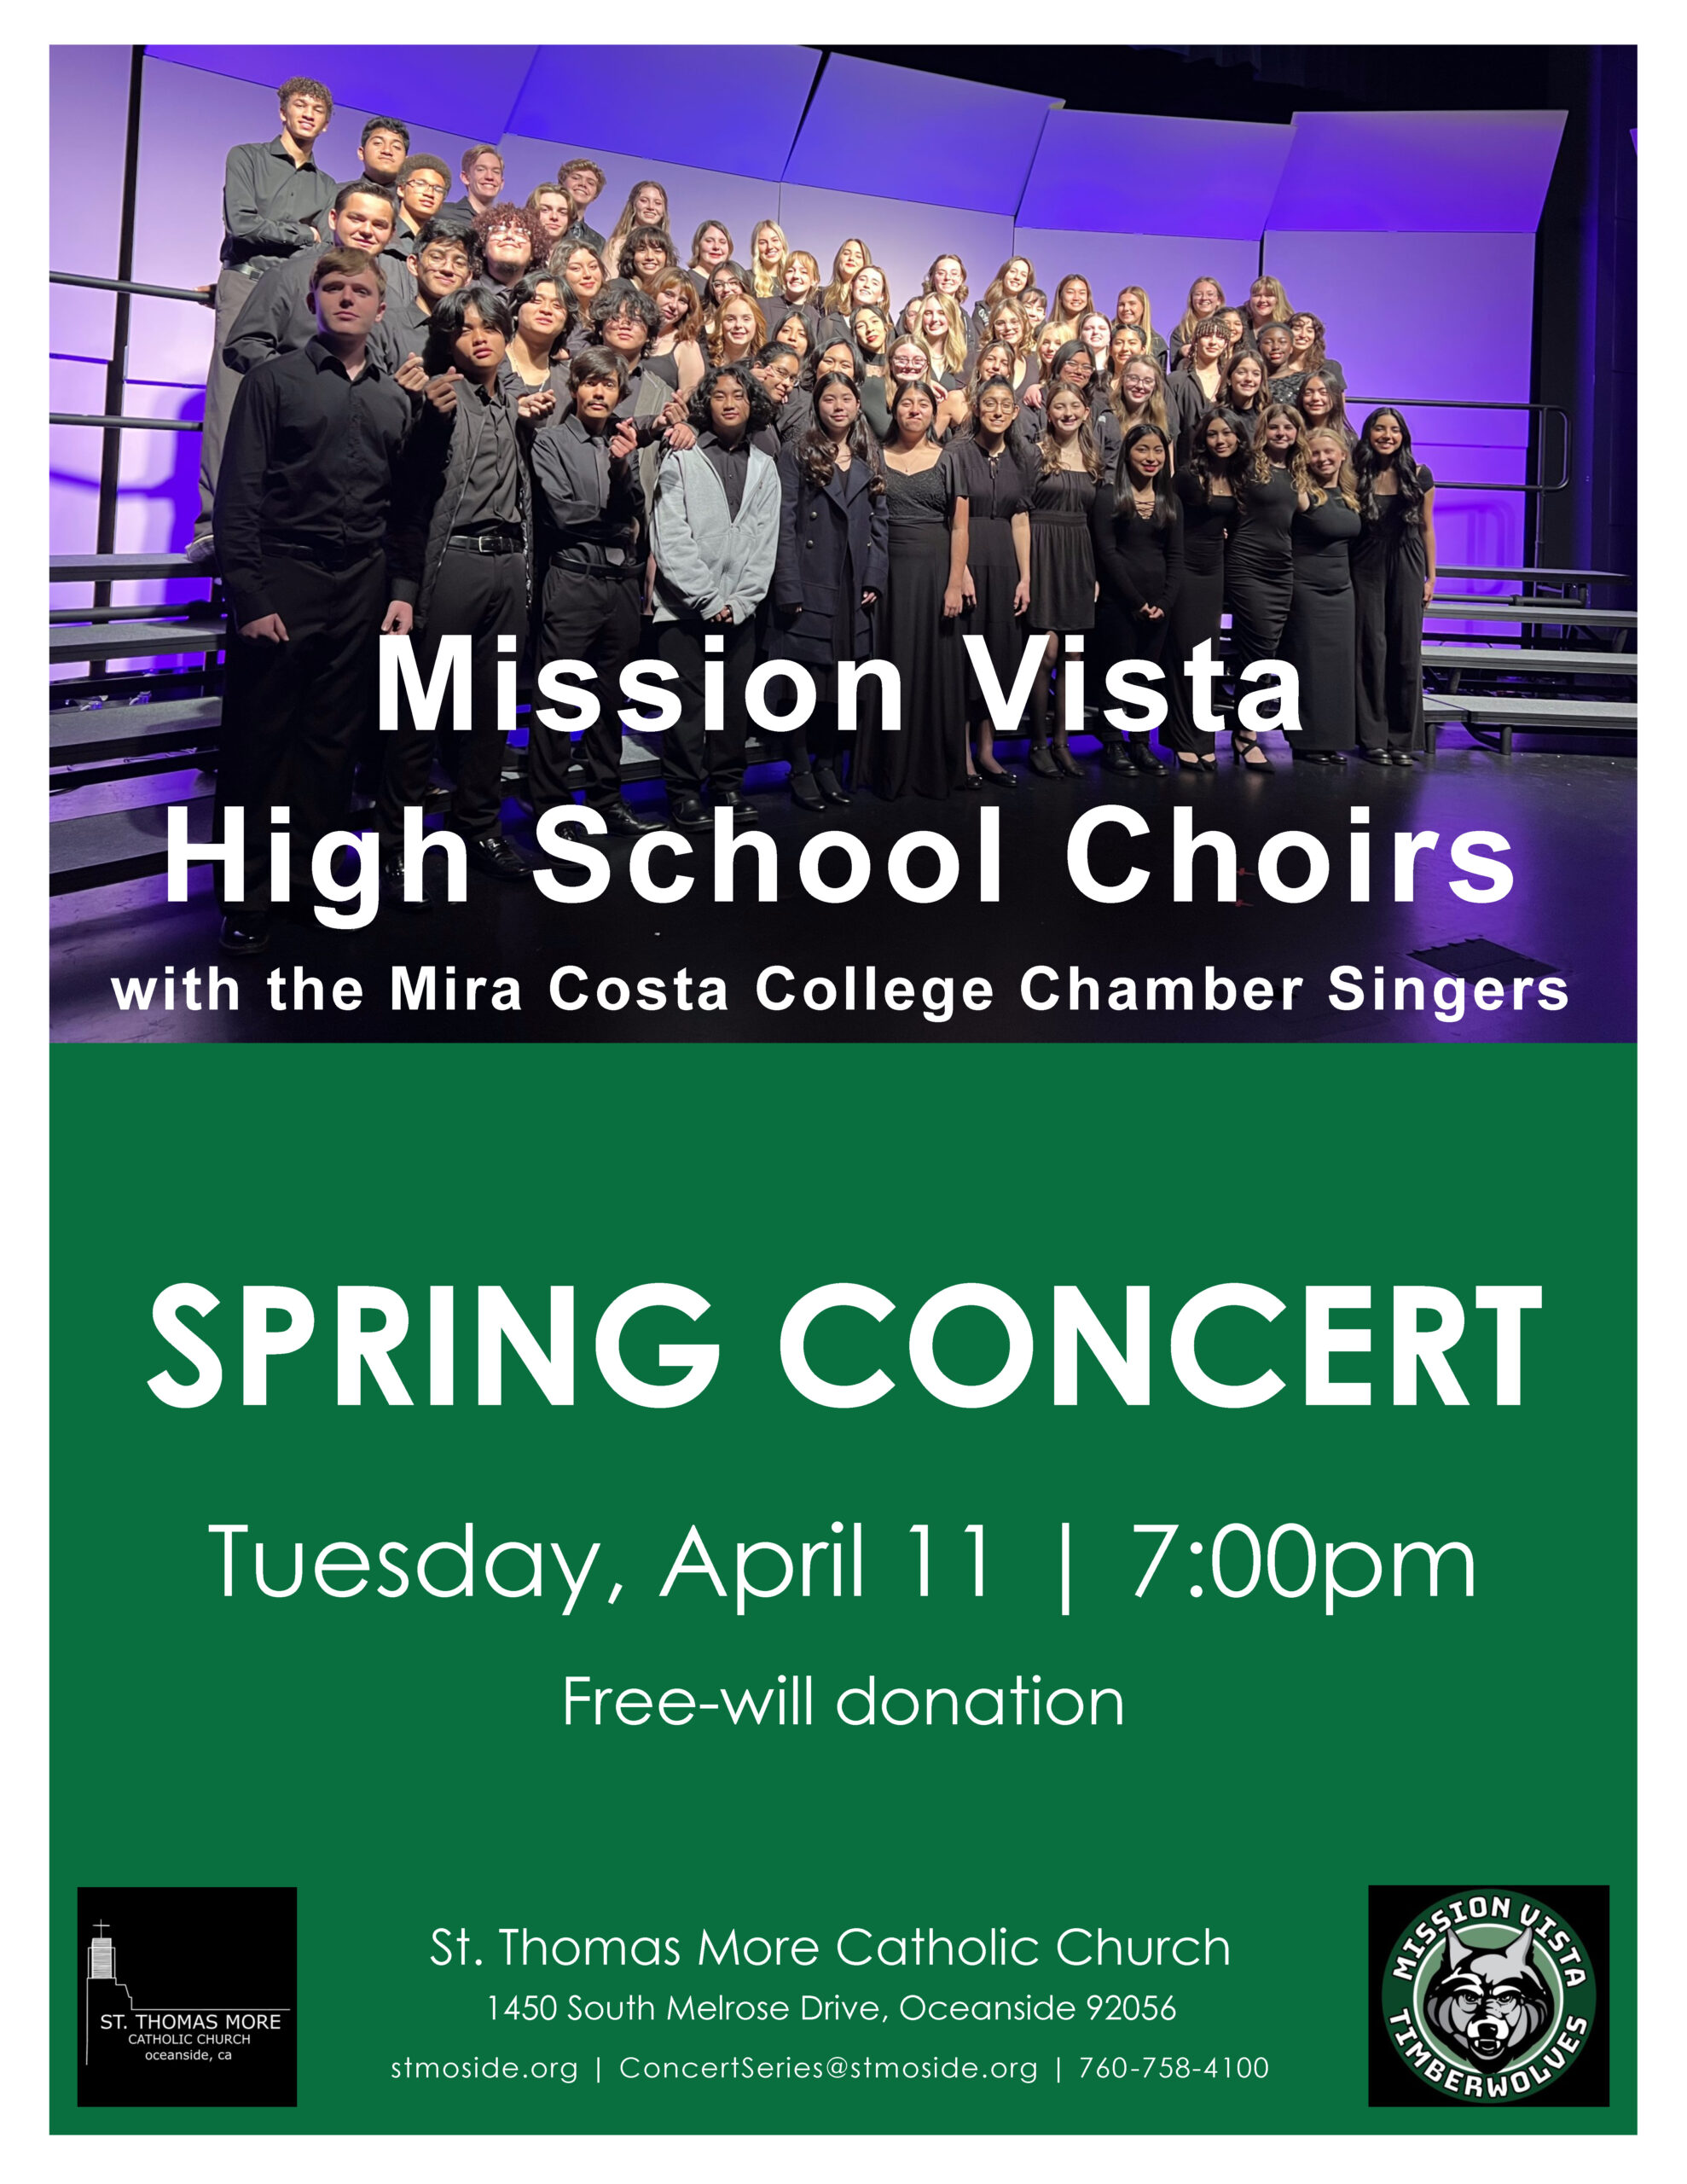 Choral Concert April 11 at 7:00pm